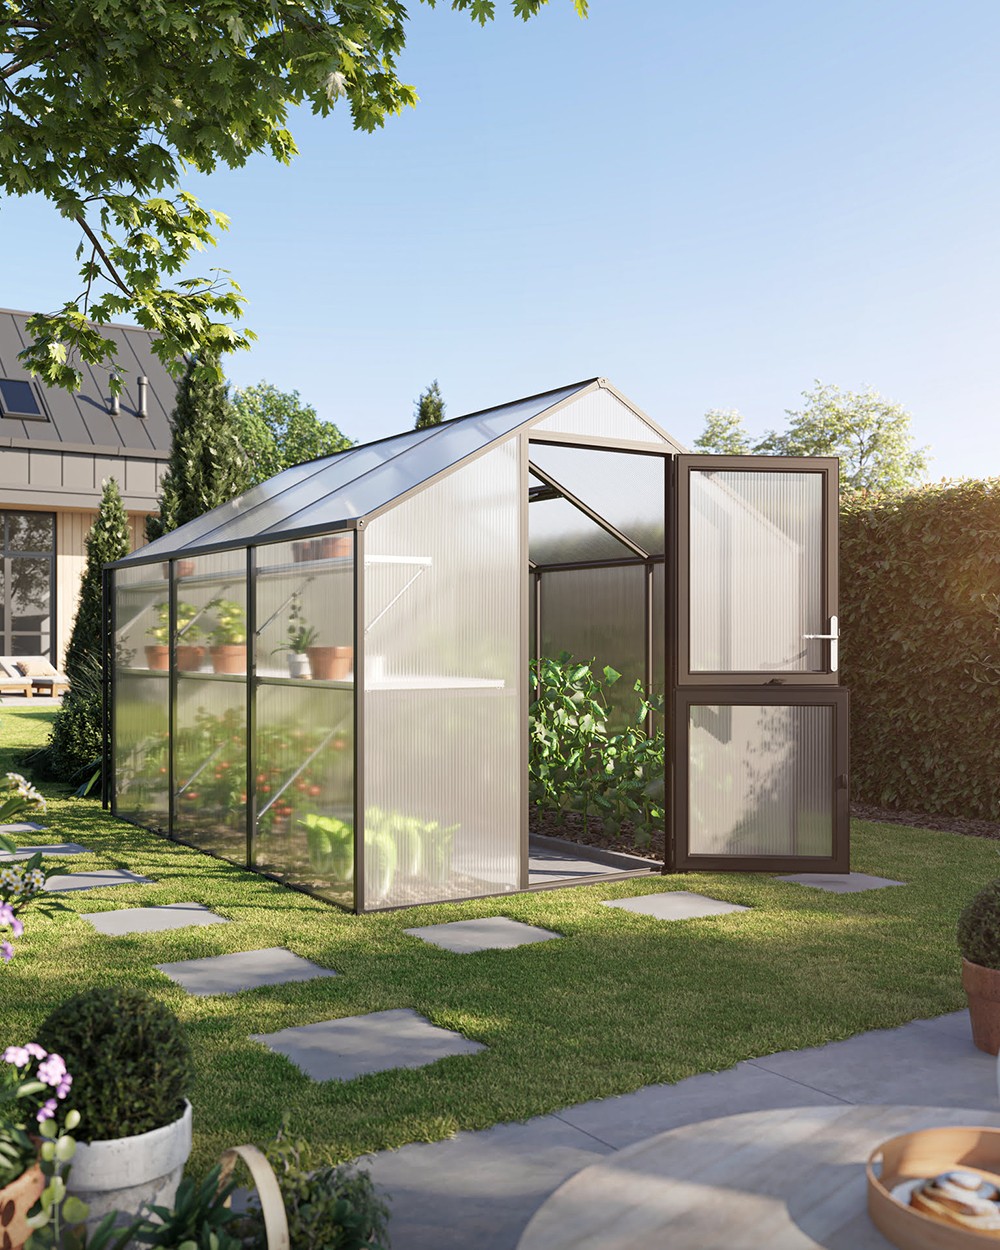 Produktvisualisierung eines Gewächshauses aus Glas im Garten